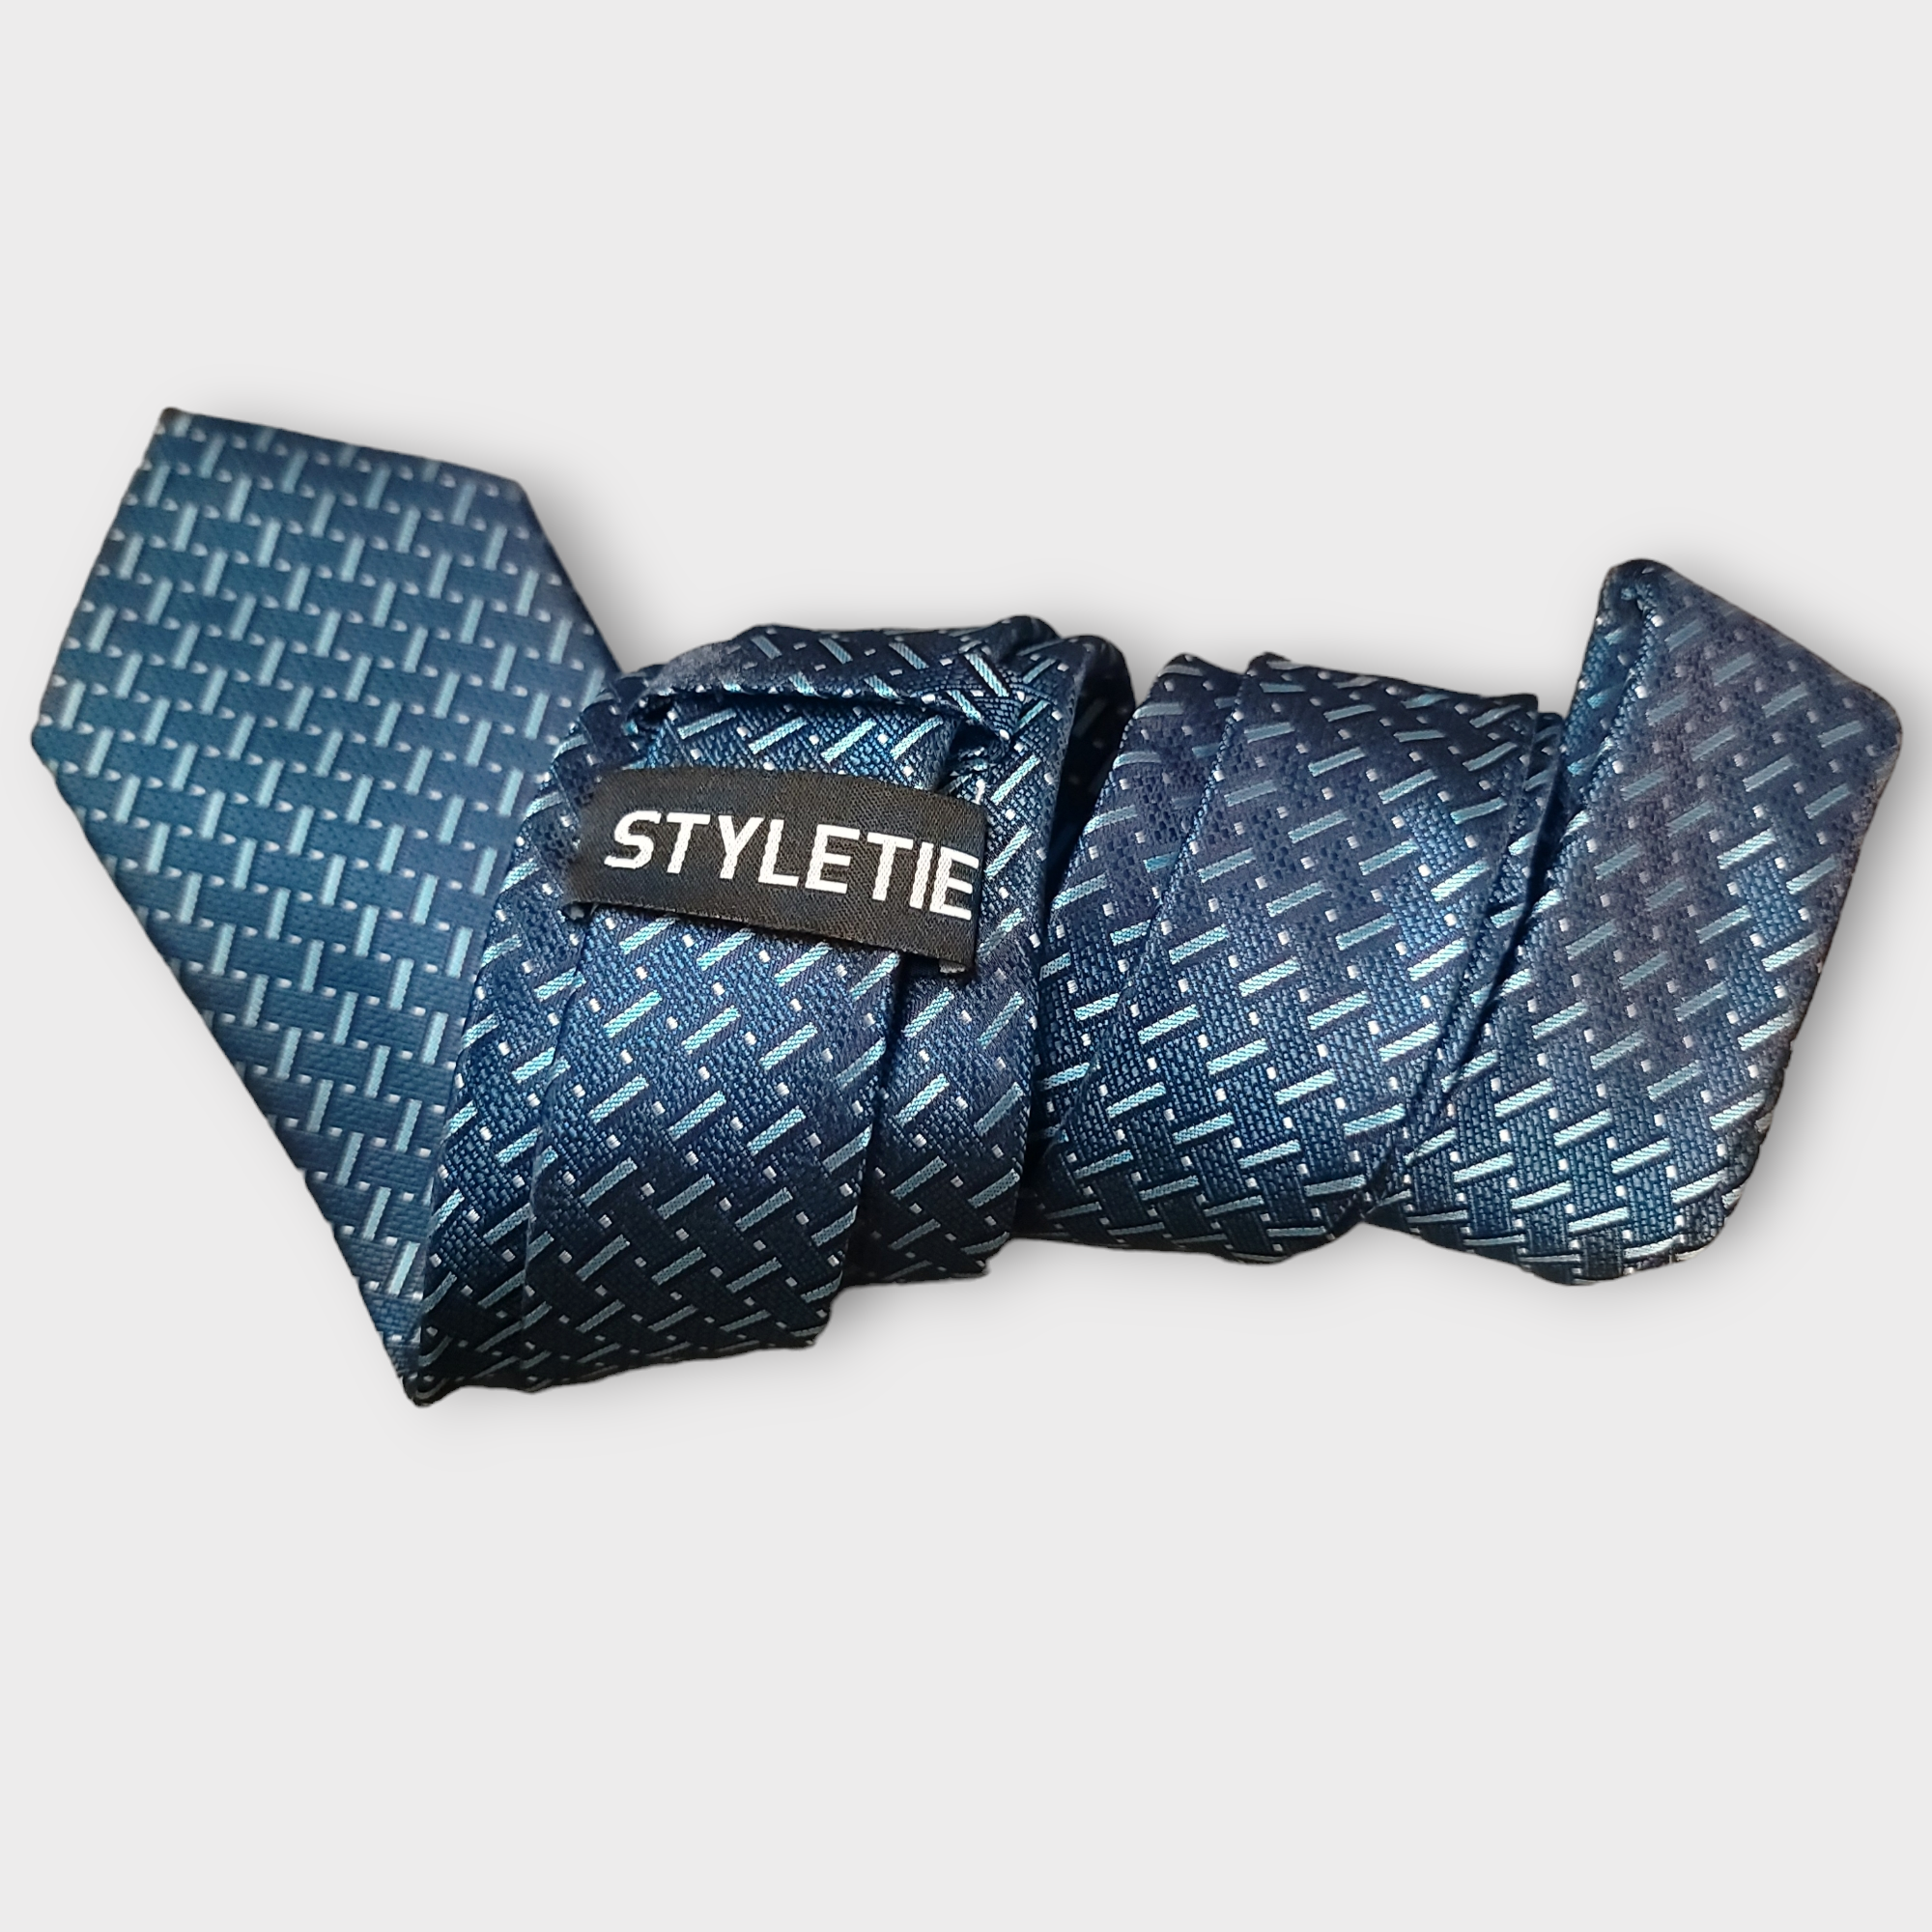 Navy Blue Stripe Silk Tie Pocket Square Cufflink Set